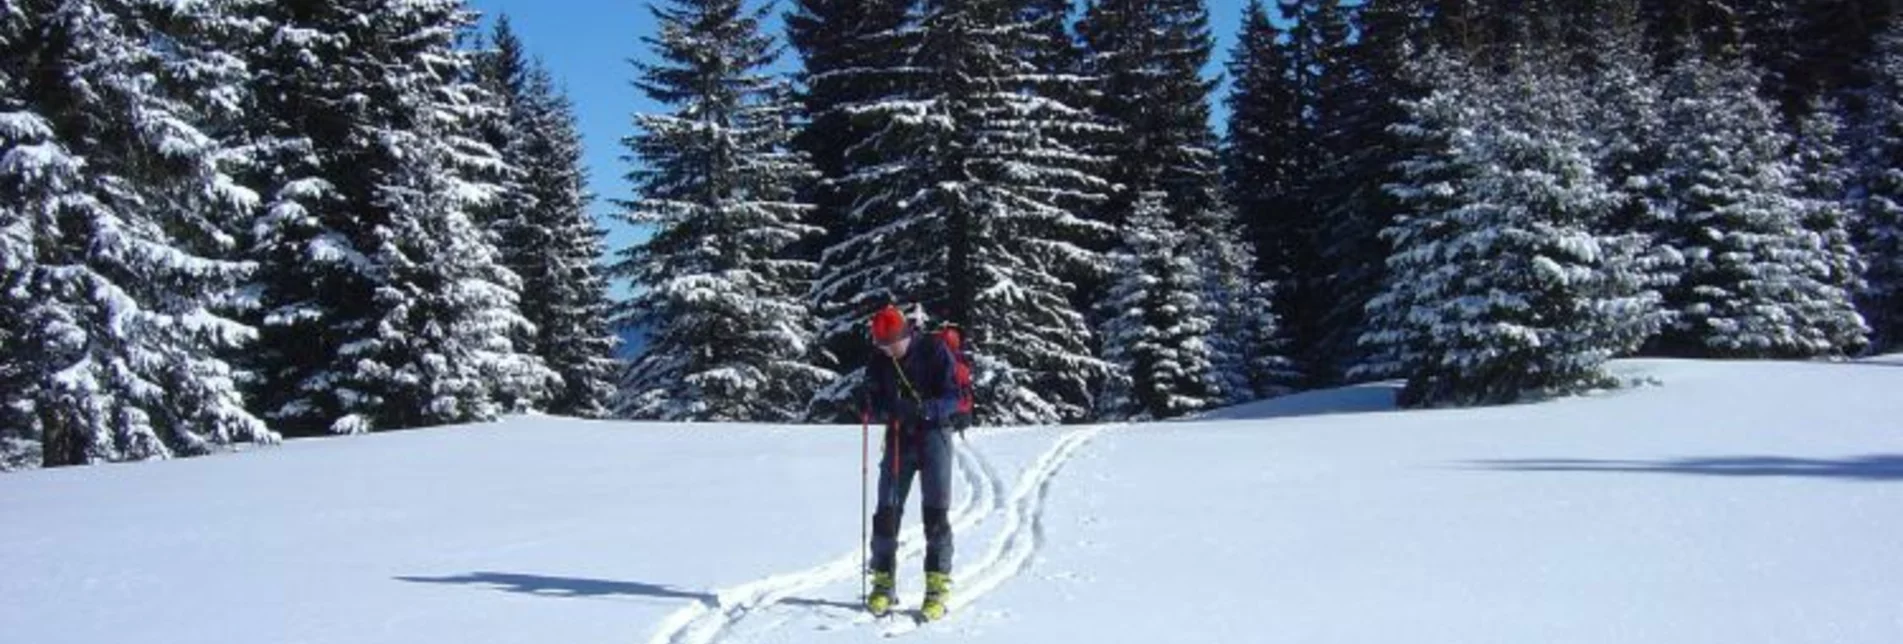 Ski Touring Skitour auf die Heukuppe - Touren-Impression #1 | © Fiona Ulm